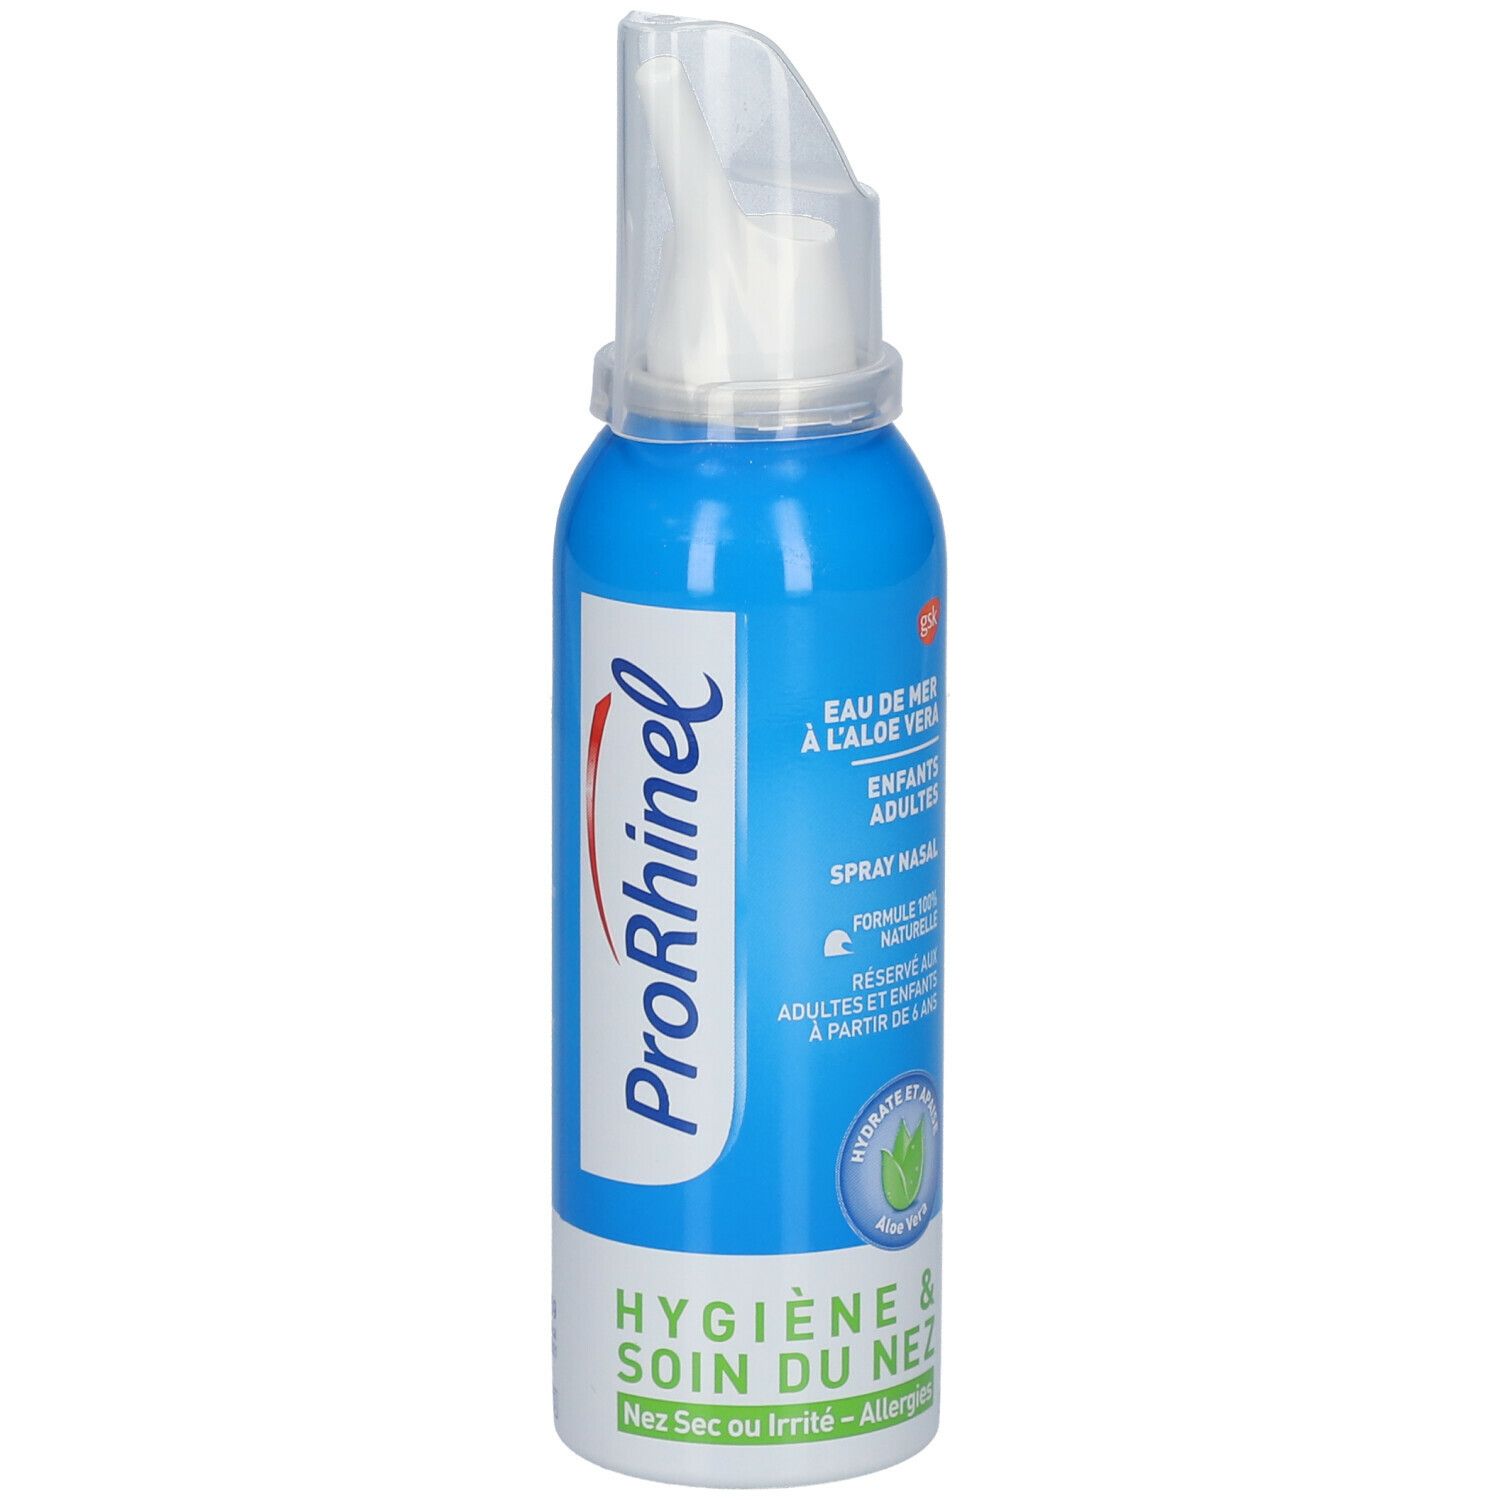 ProRhinel Spray nasal fluidifiant adultes et enfants - Déboucher nez